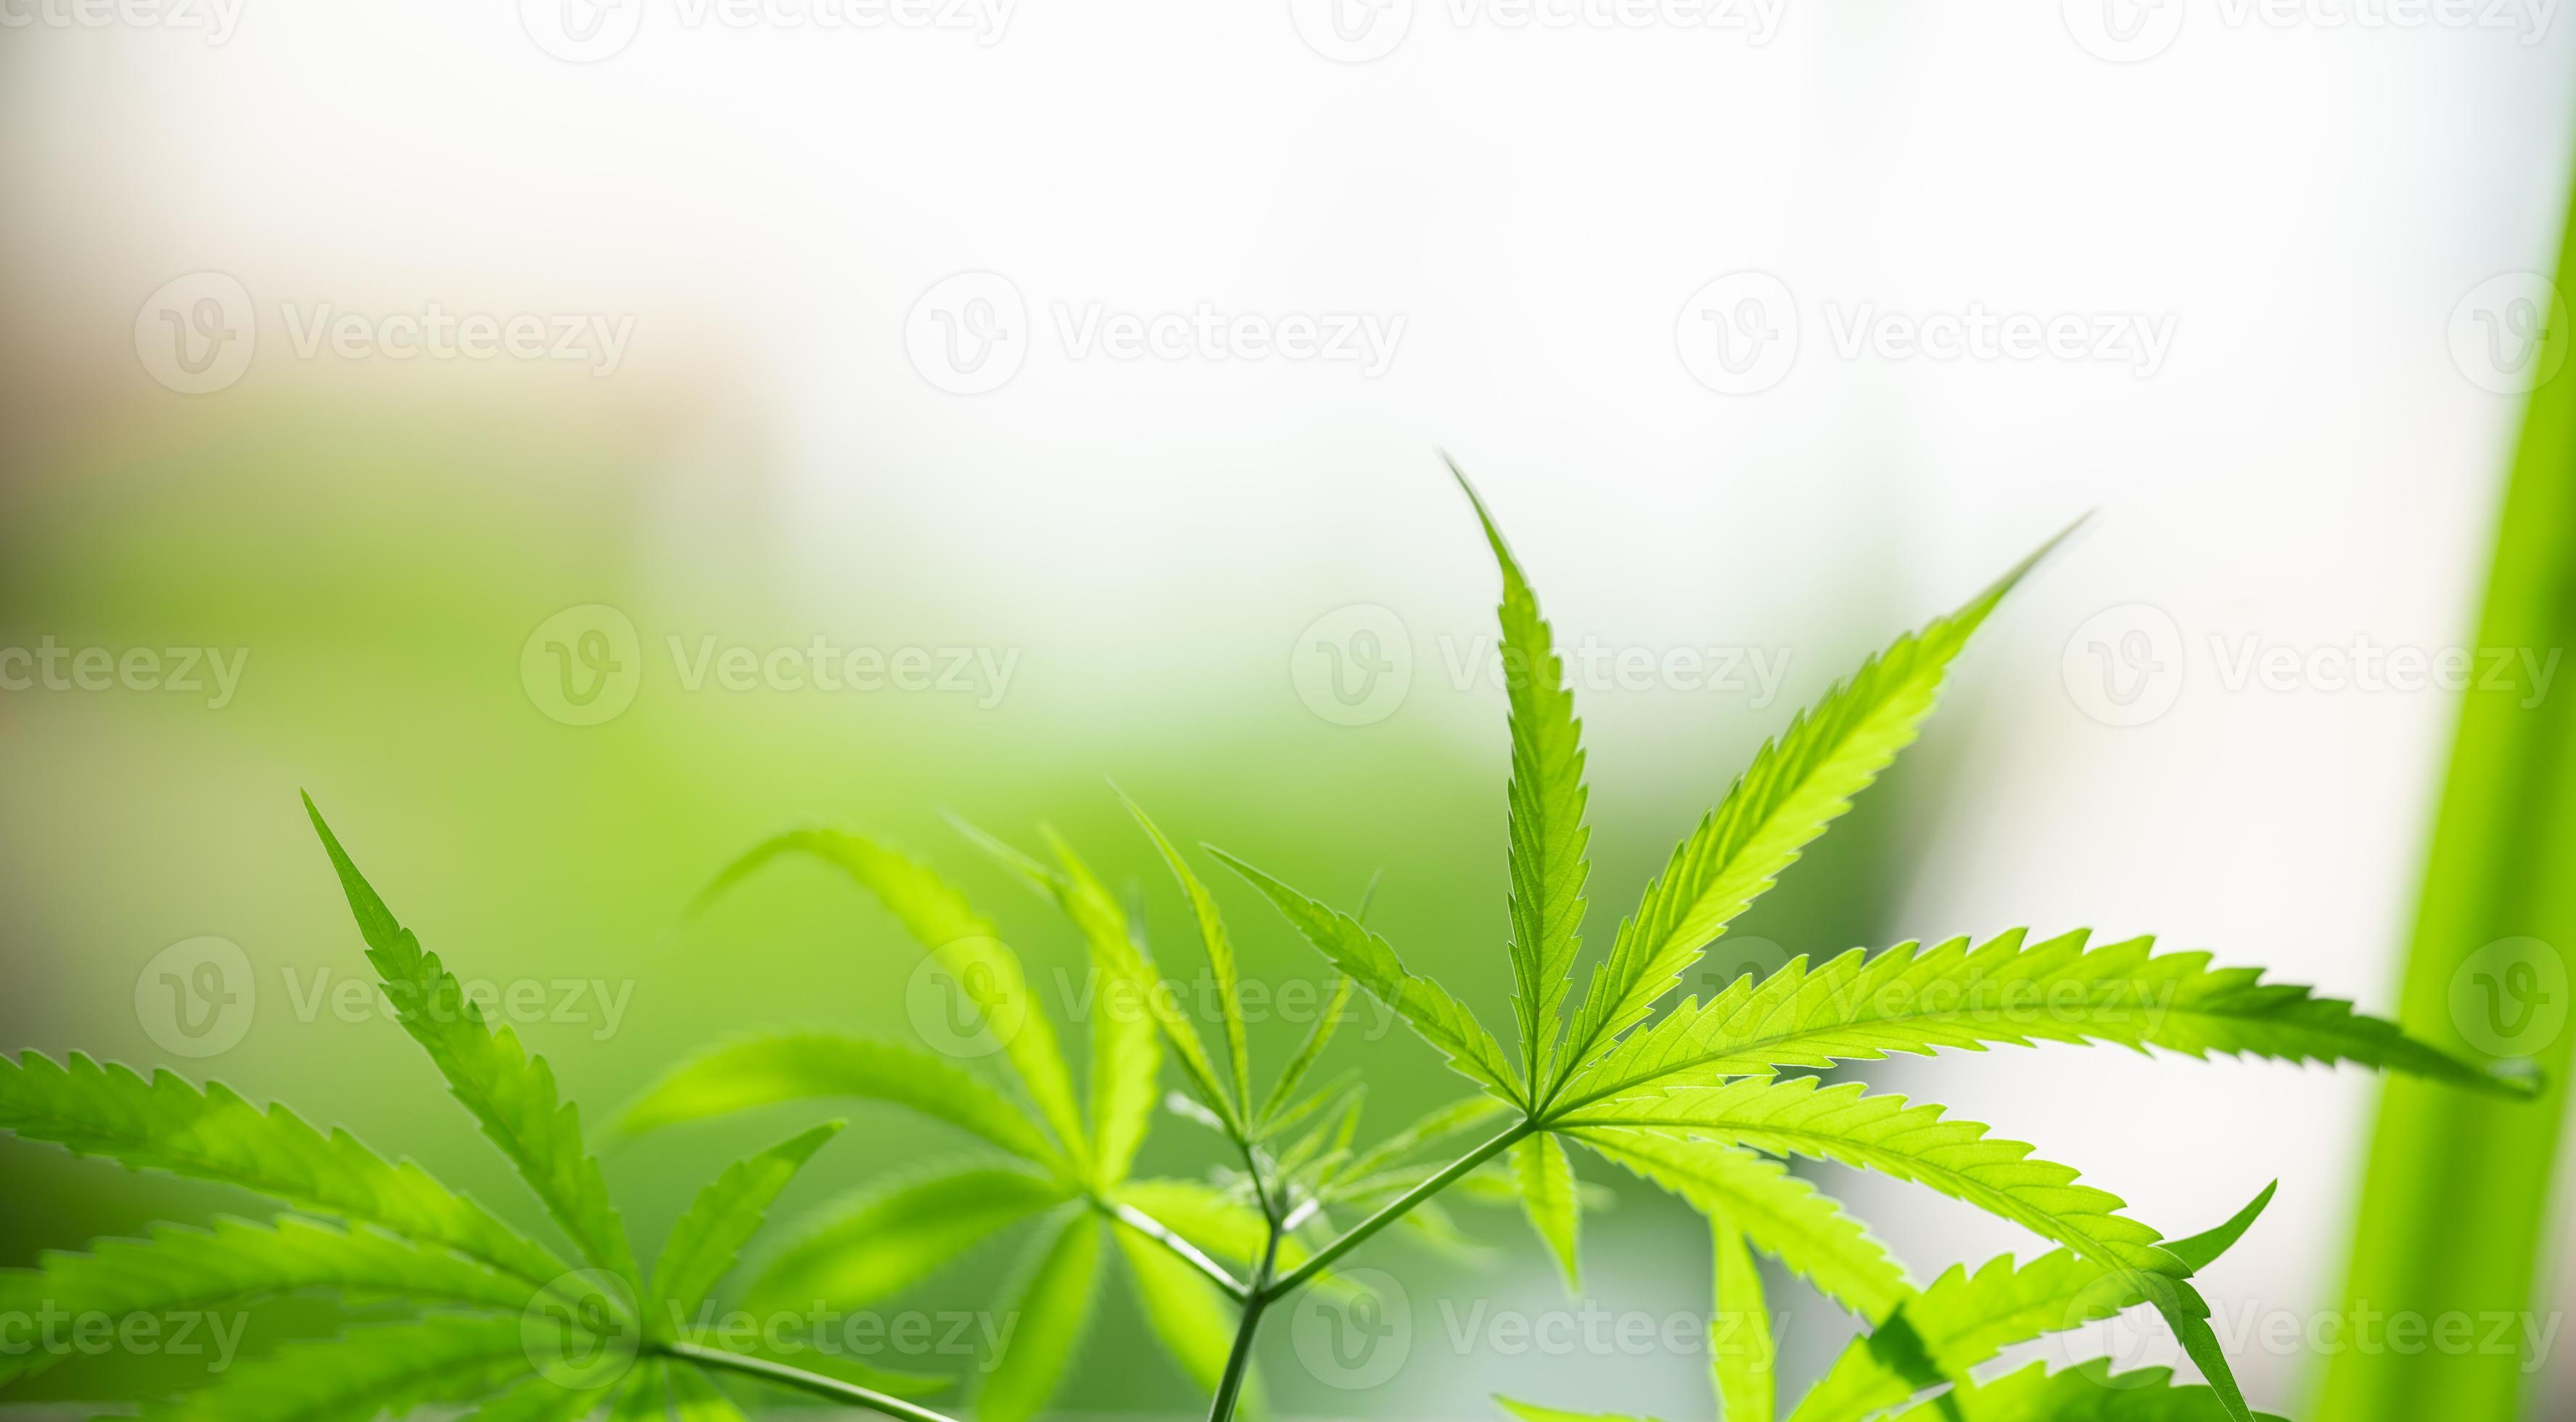 Trải nghiệm một tầm nhìn mới về cây thuốc phiện từ hình ảnh về Cannabis. Hình ảnh đầy màu sắc và độc đáo sẽ khiến bạn thấy cây thuốc phiện với một góc nhìn khác lạ và thú vị.